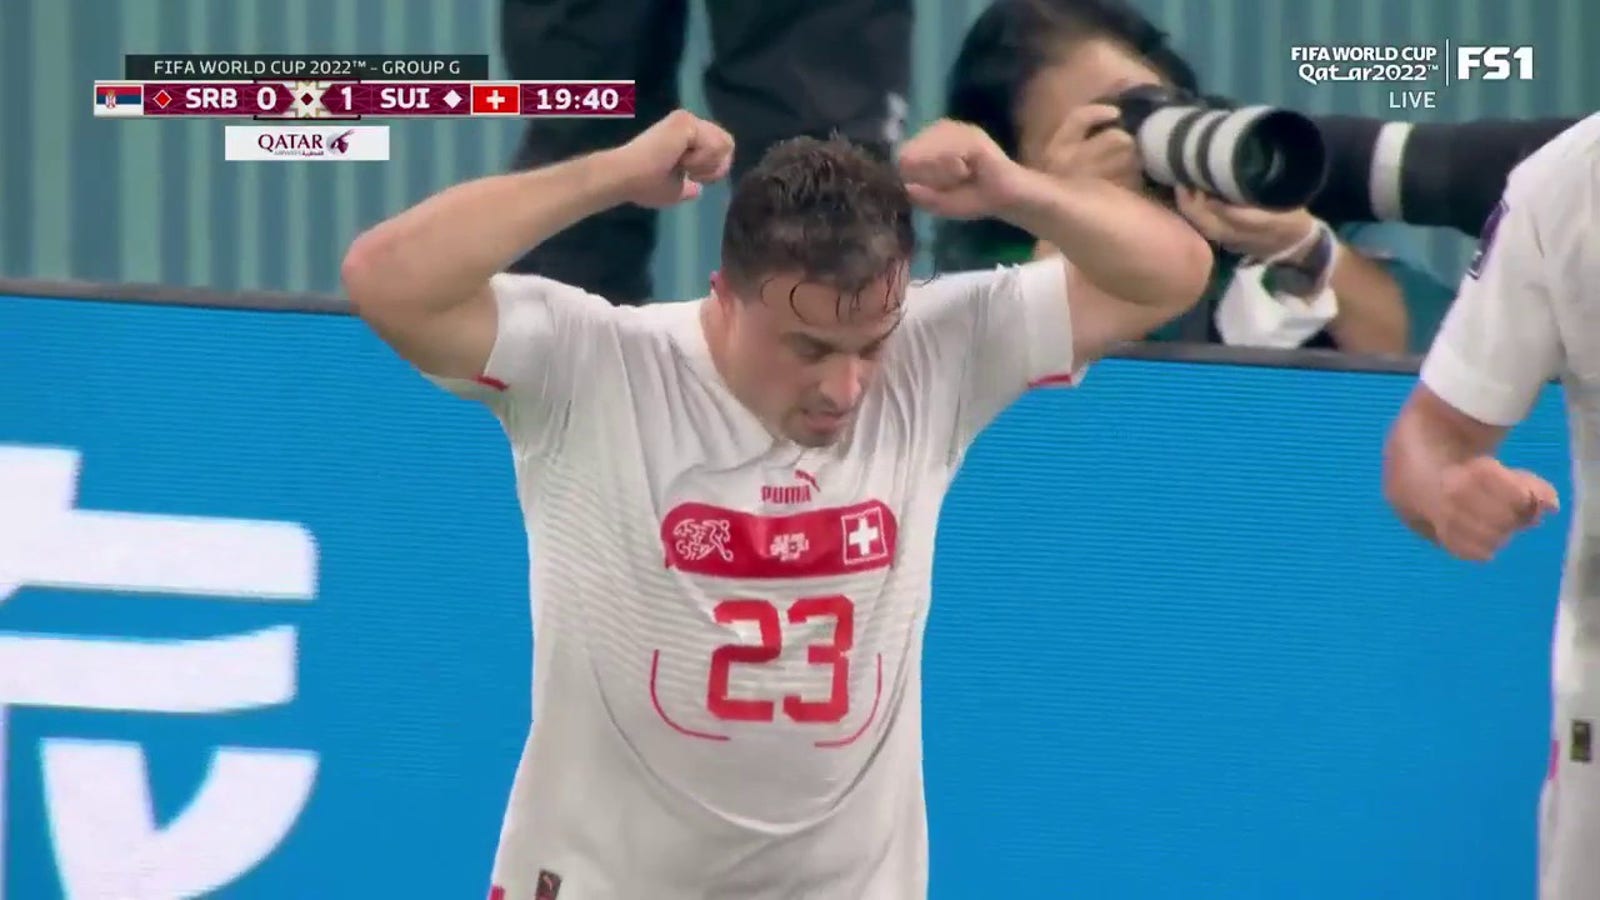 Switzerland's Xherdan Shaqiri scores goal vs. Serbia in 19'